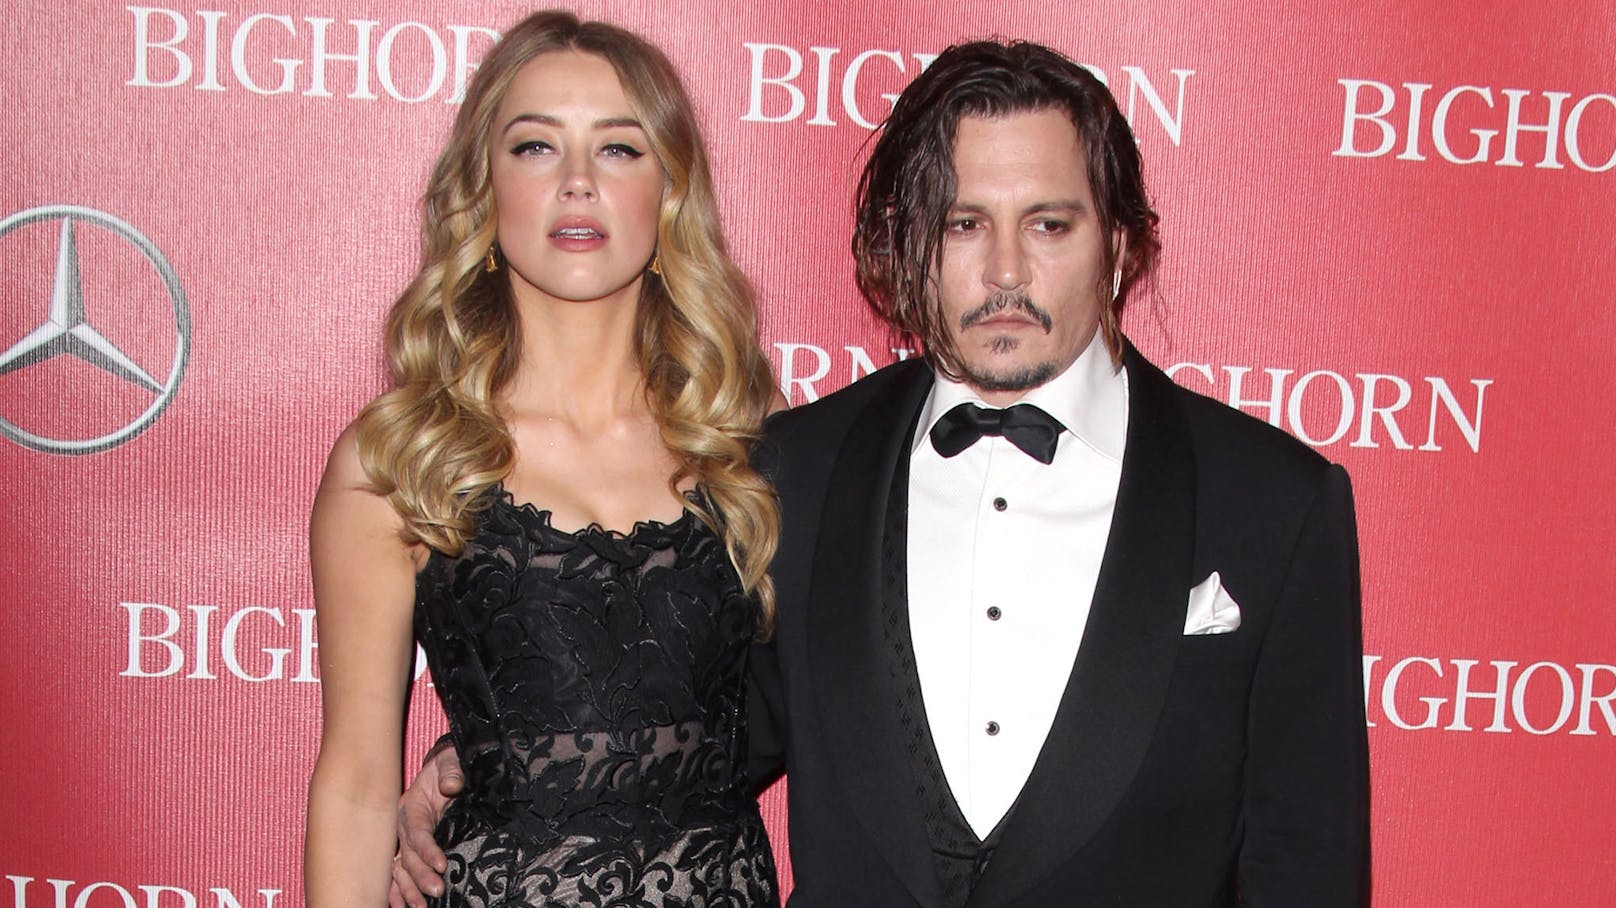 Die Ehe von <strong>Amber Heard</strong> und <strong>Johnny Depp</strong> hielt nur 15 Monate und endete in einer erbitterten Schlammschlacht vor dem Londoner Gericht.